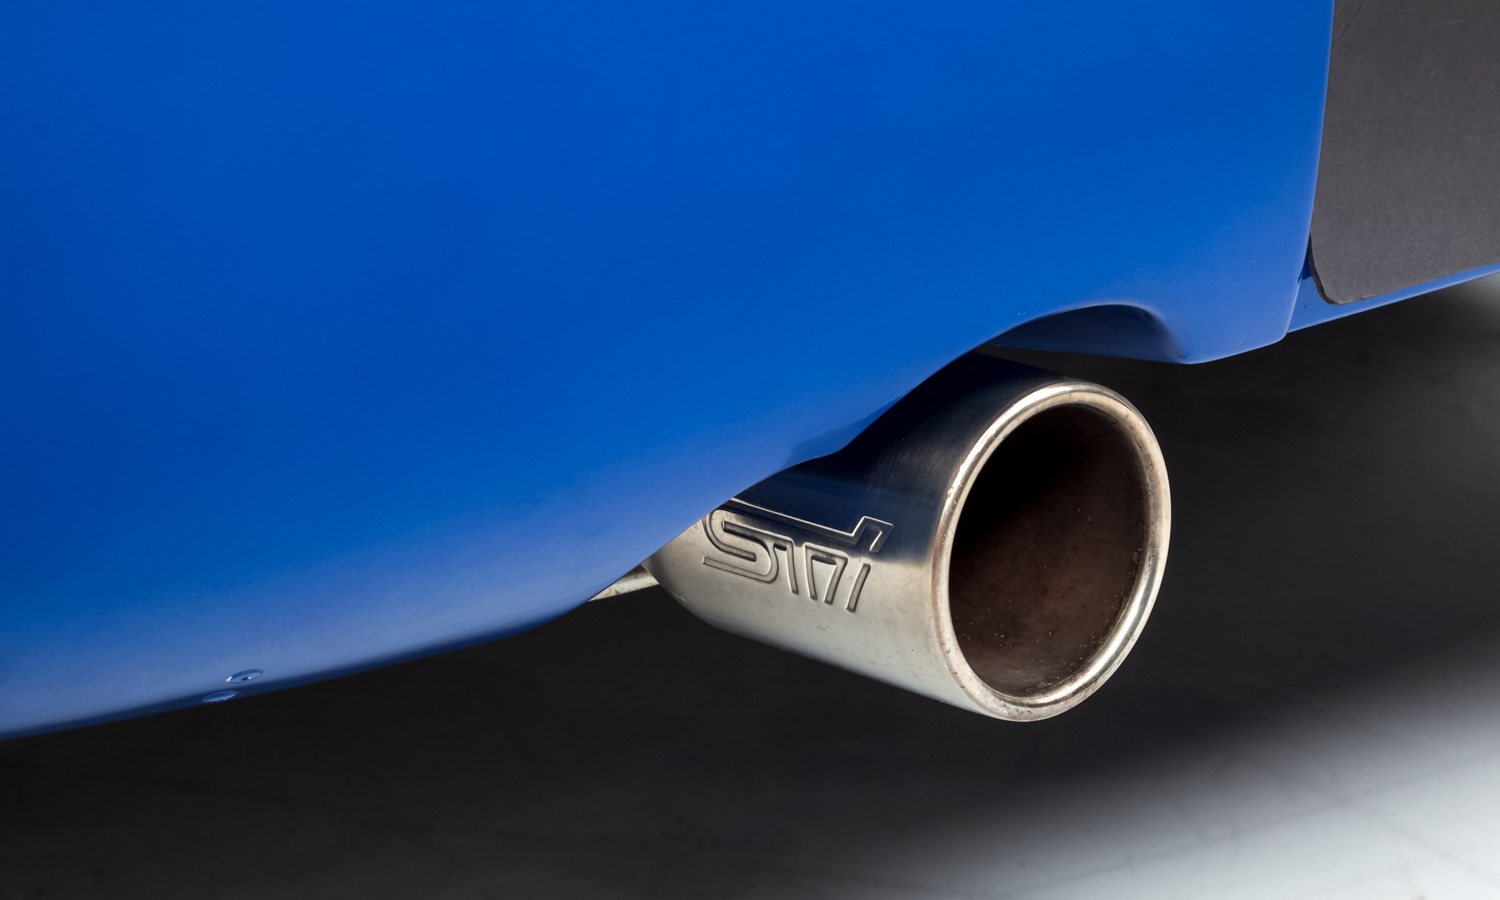 Logo STi được khắc trên ống xả màu bạc của Subaru Impreza 22B STi